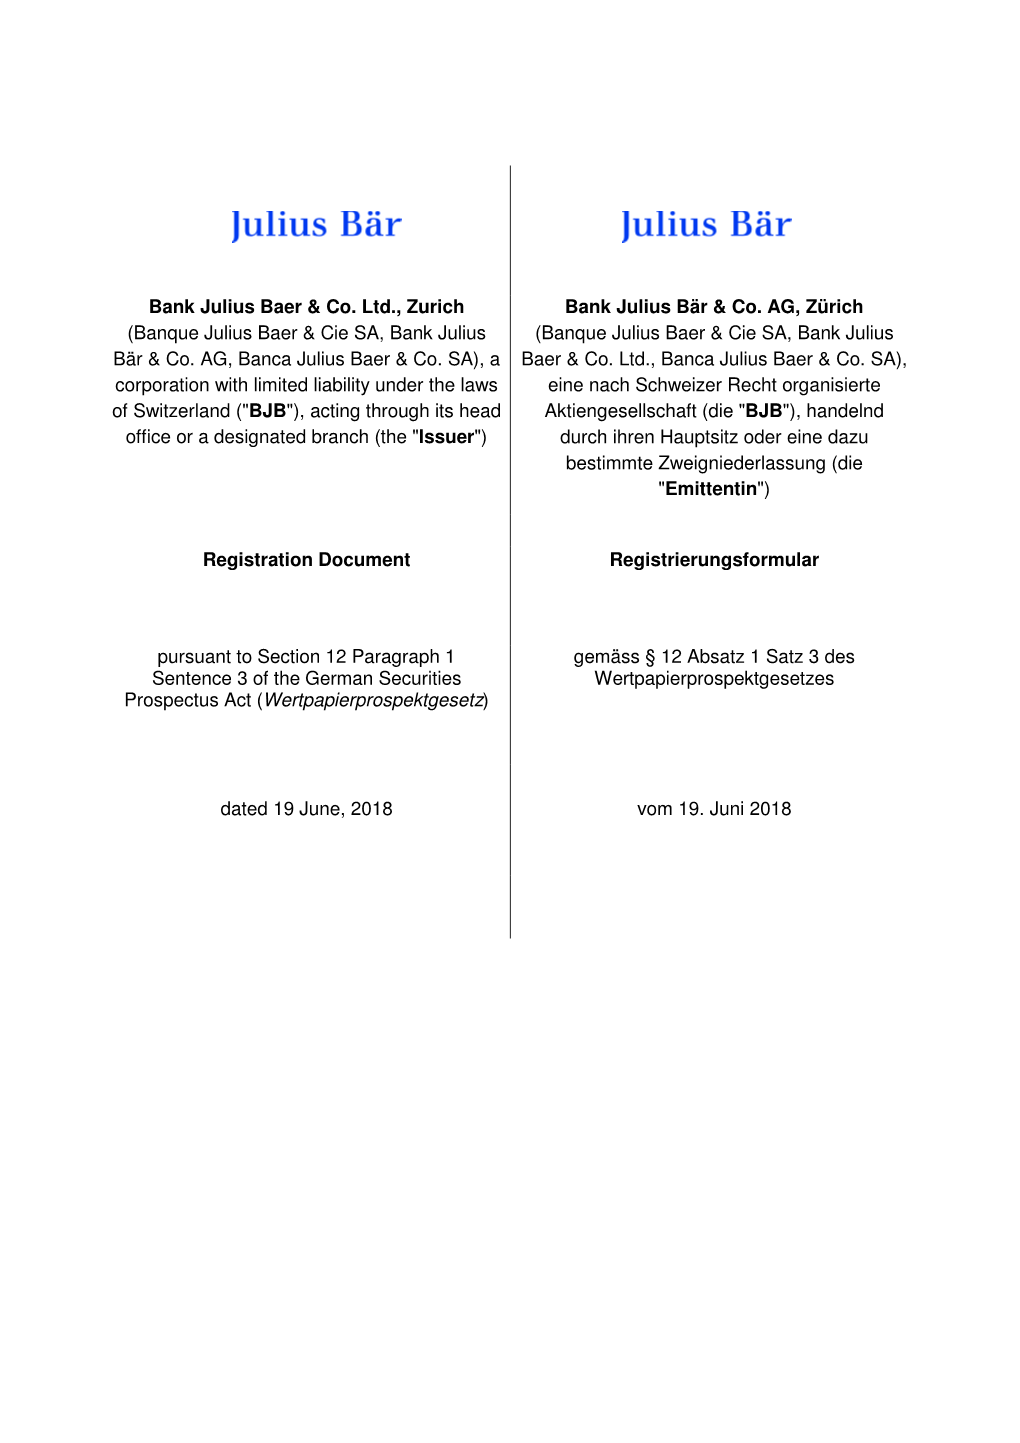 Registration Document of Bank Julius Baer & Co. Ltd